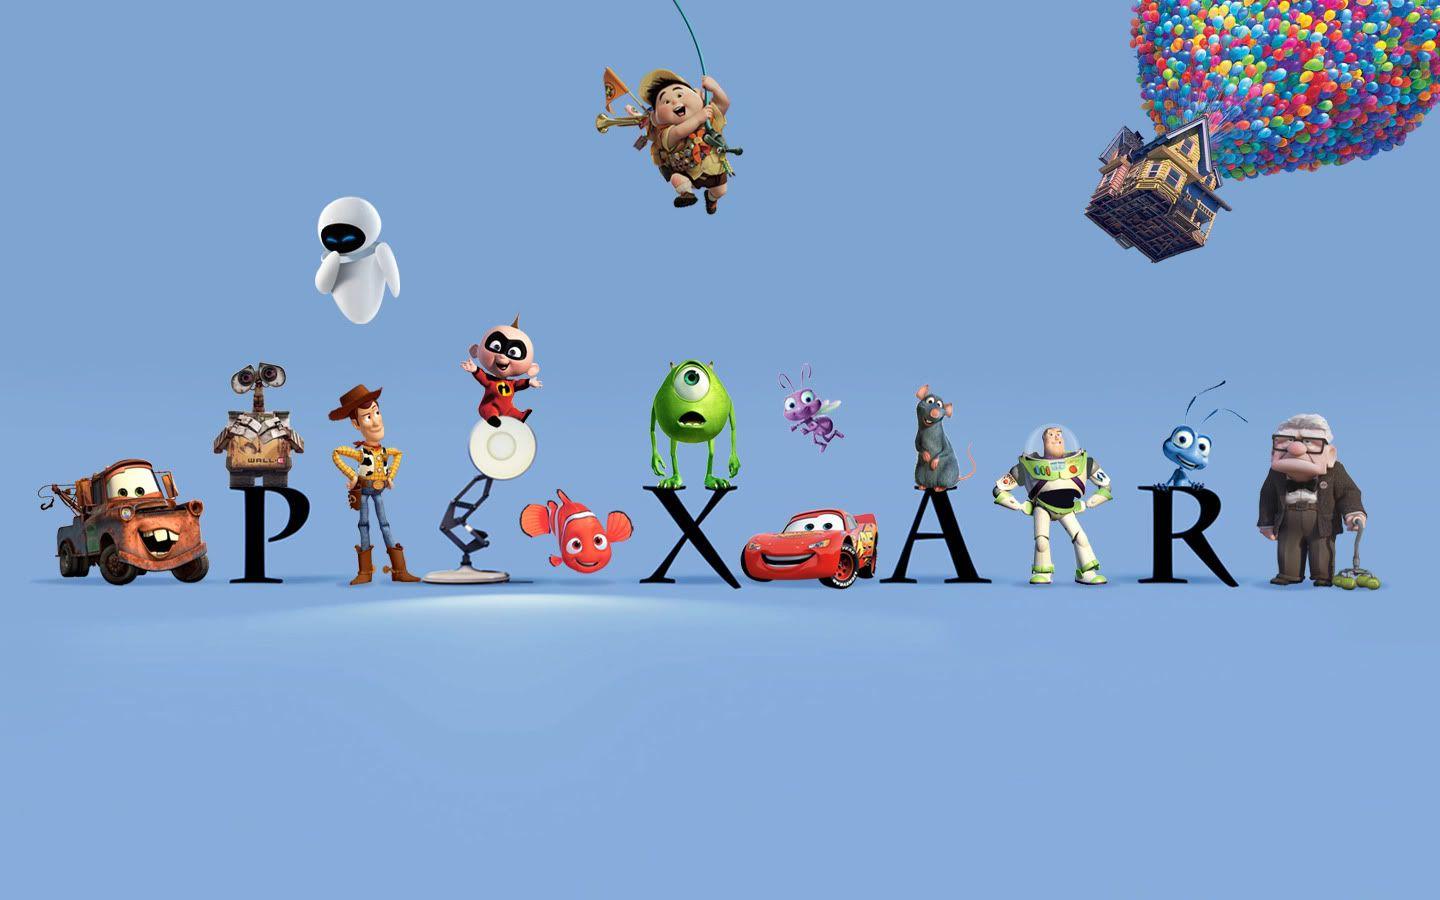 Pixar Animation Studios Logo - Pixar Animation Studios | Pixar Wiki | FANDOM powered by Wikia